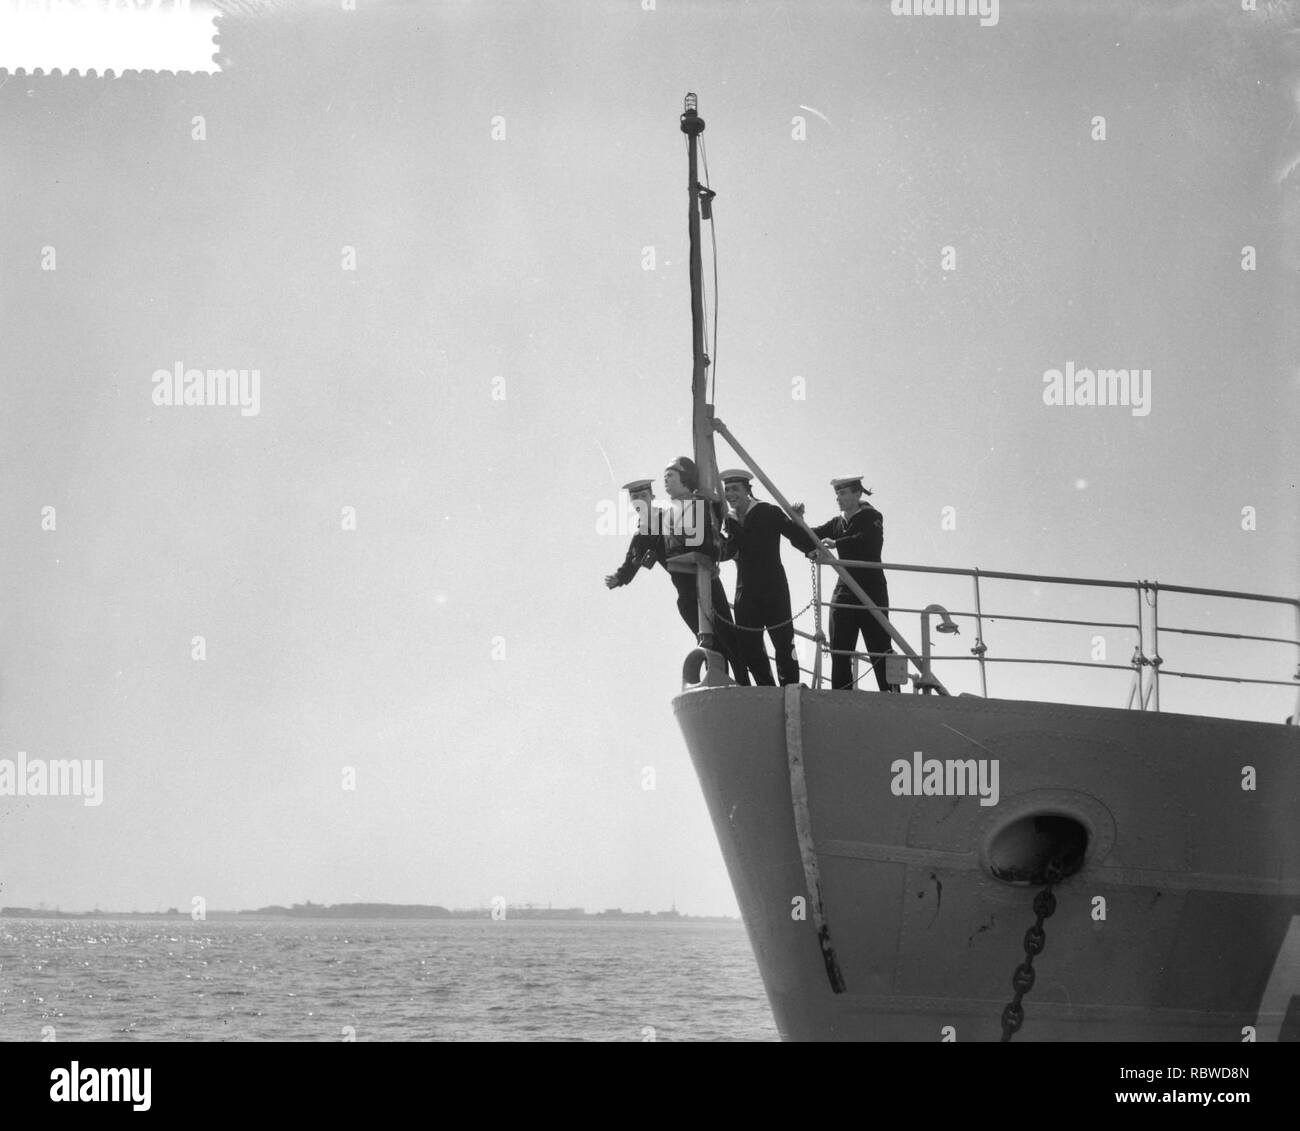 Aankomst in Den Helder van Hr. Ms. fregat Van Speijk. Schegbeeld De Loden Verrad, Bestanddeelnr 910-6107. Stock Photo